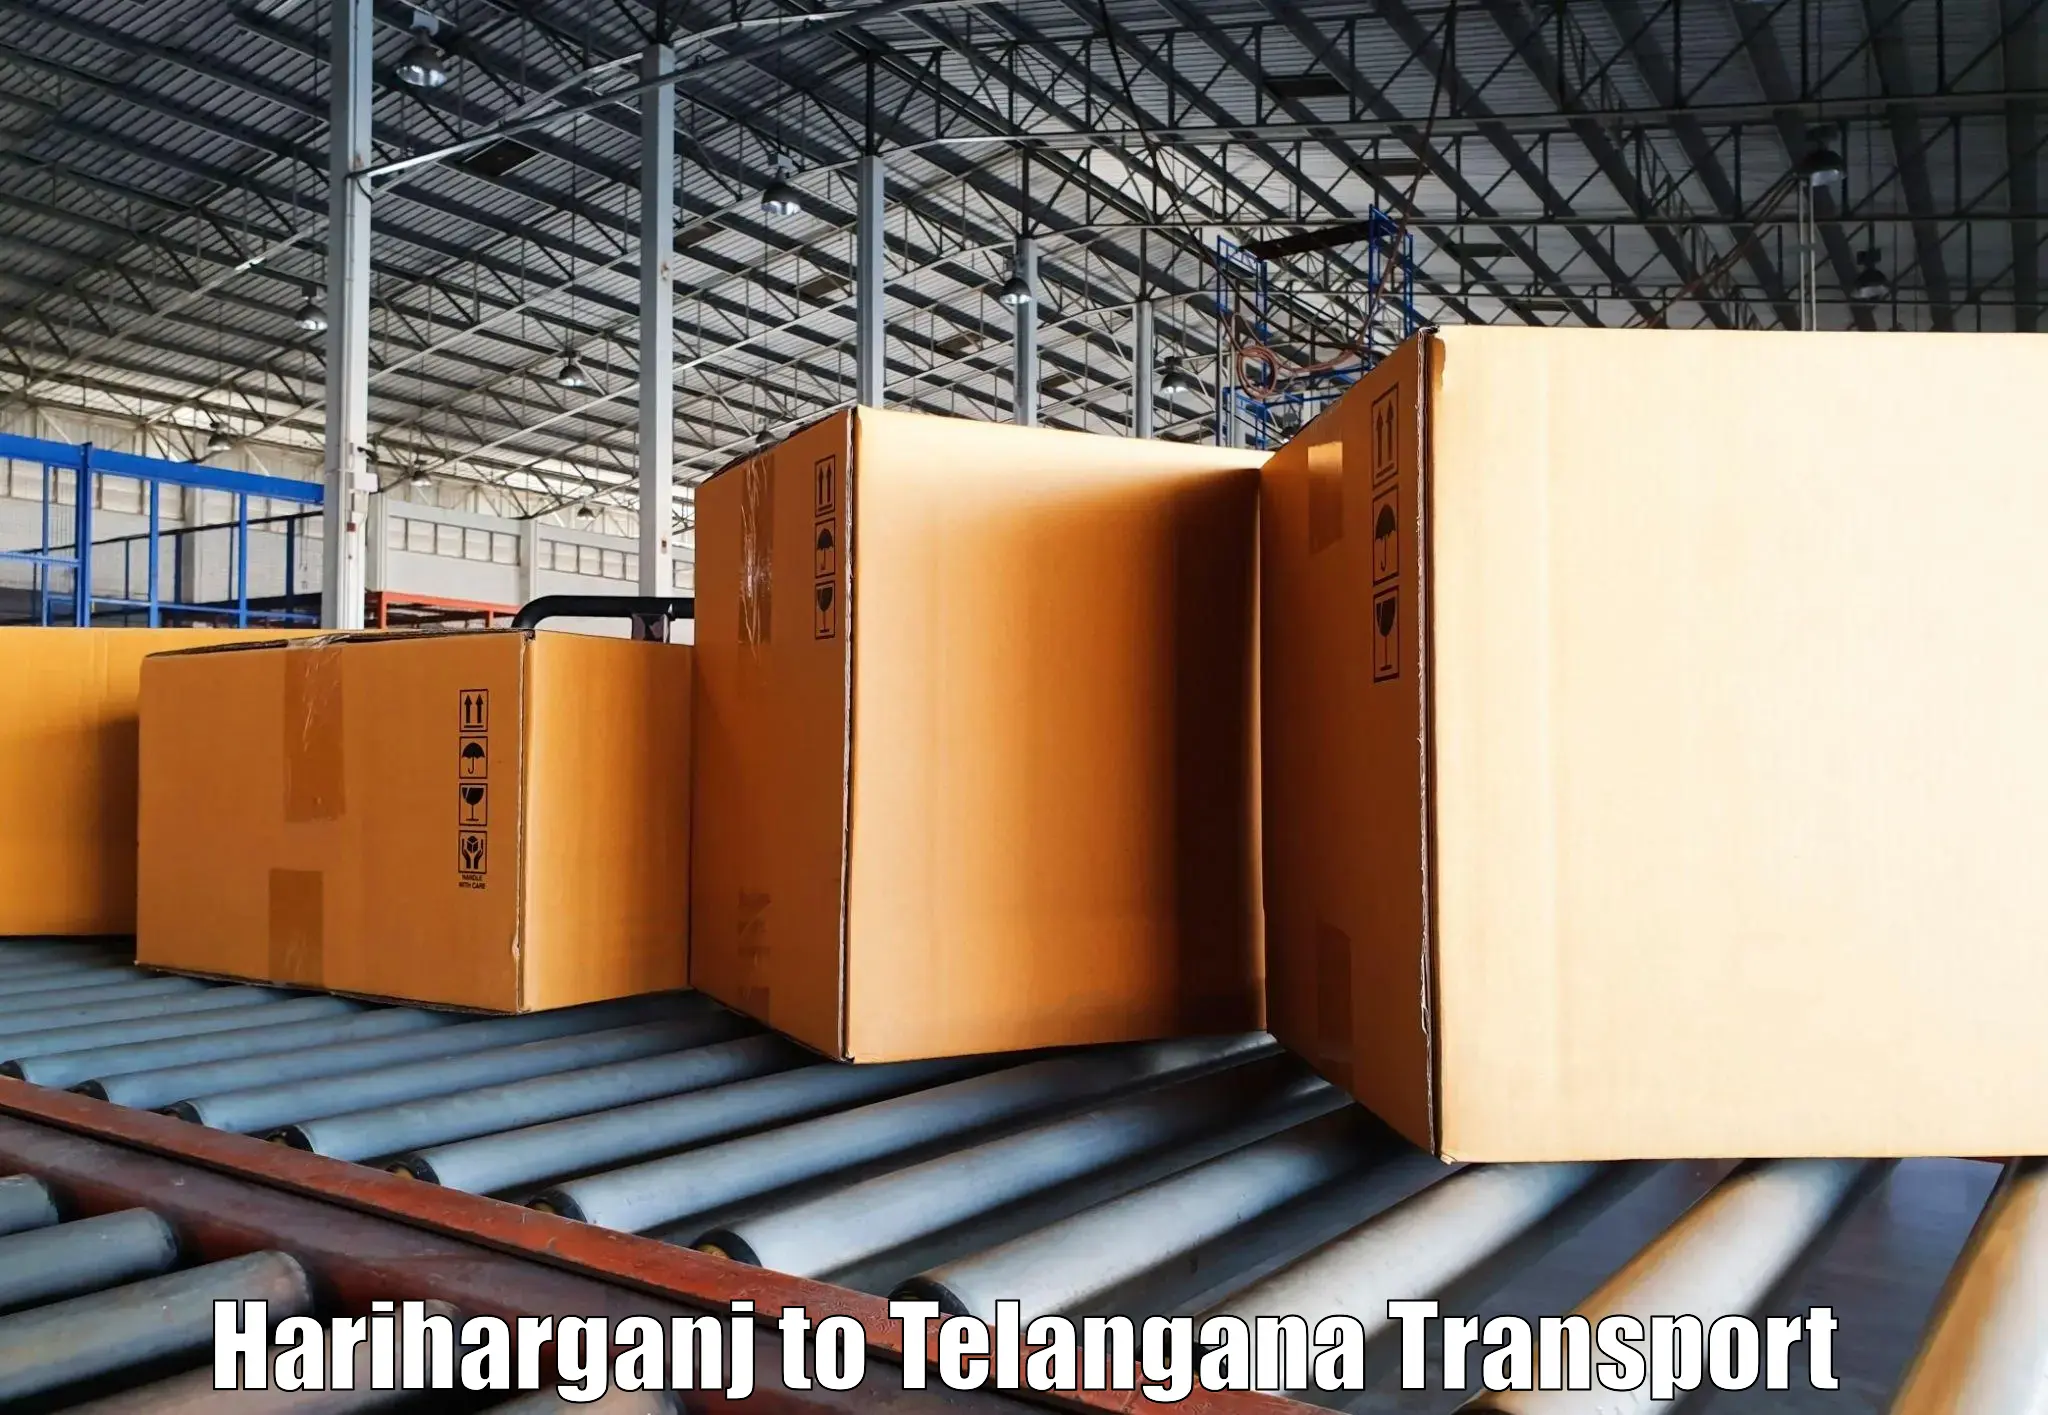 Transport in sharing Hariharganj to Manneguda